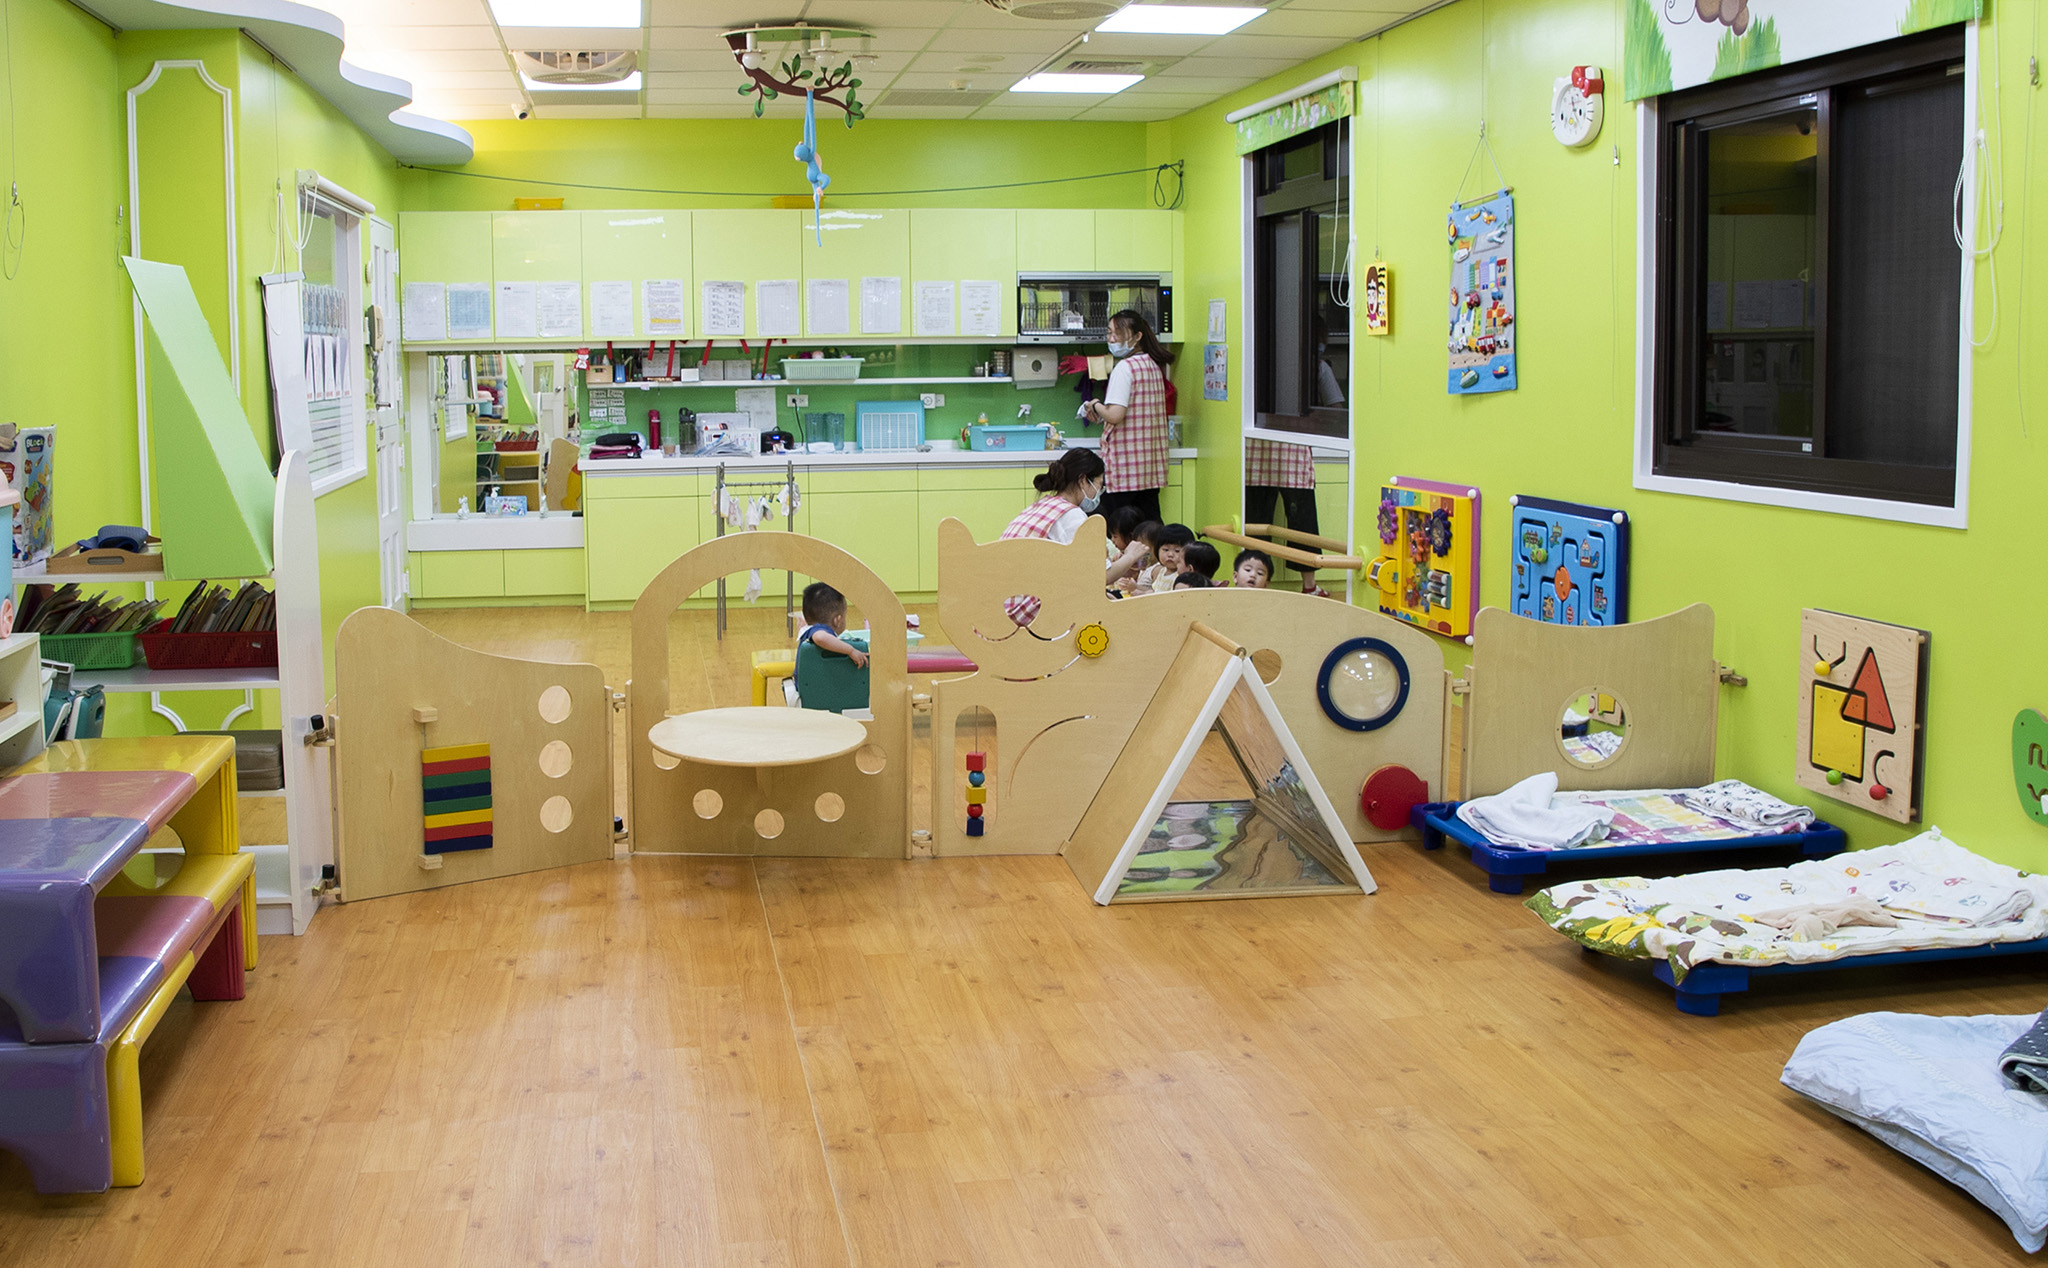 教室內教養嬰幼兒所需的設施一應俱全，減輕老師照顧壓力，也倍增安全性。